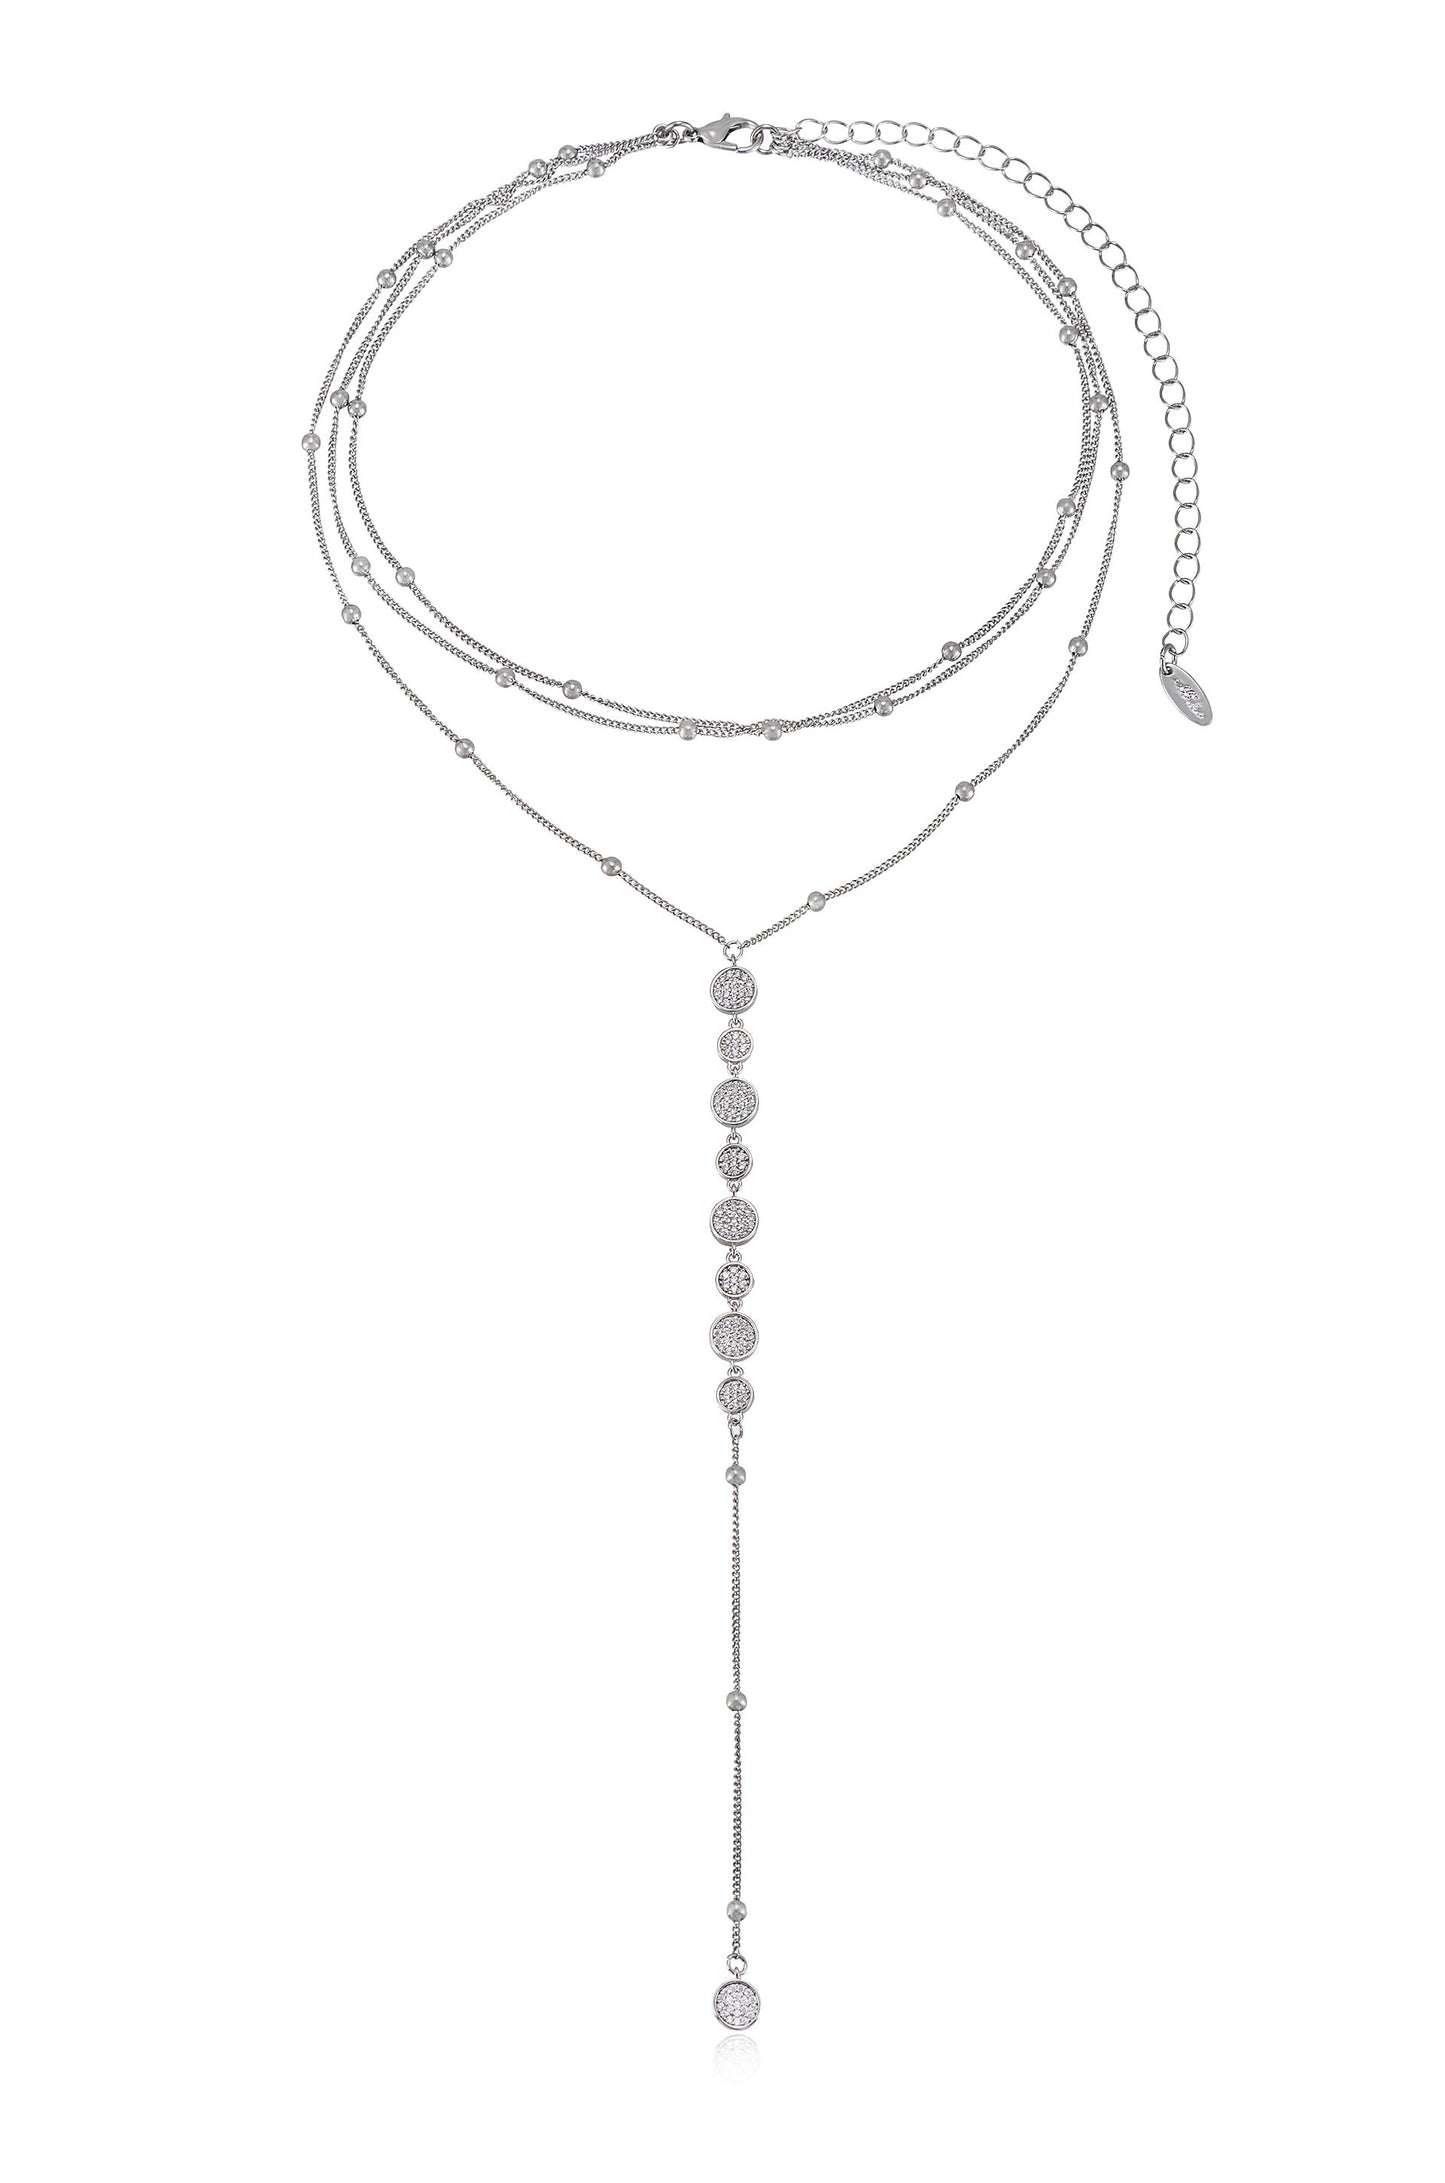 Bali Dreams Crystal Lariat Necklace in rhodium